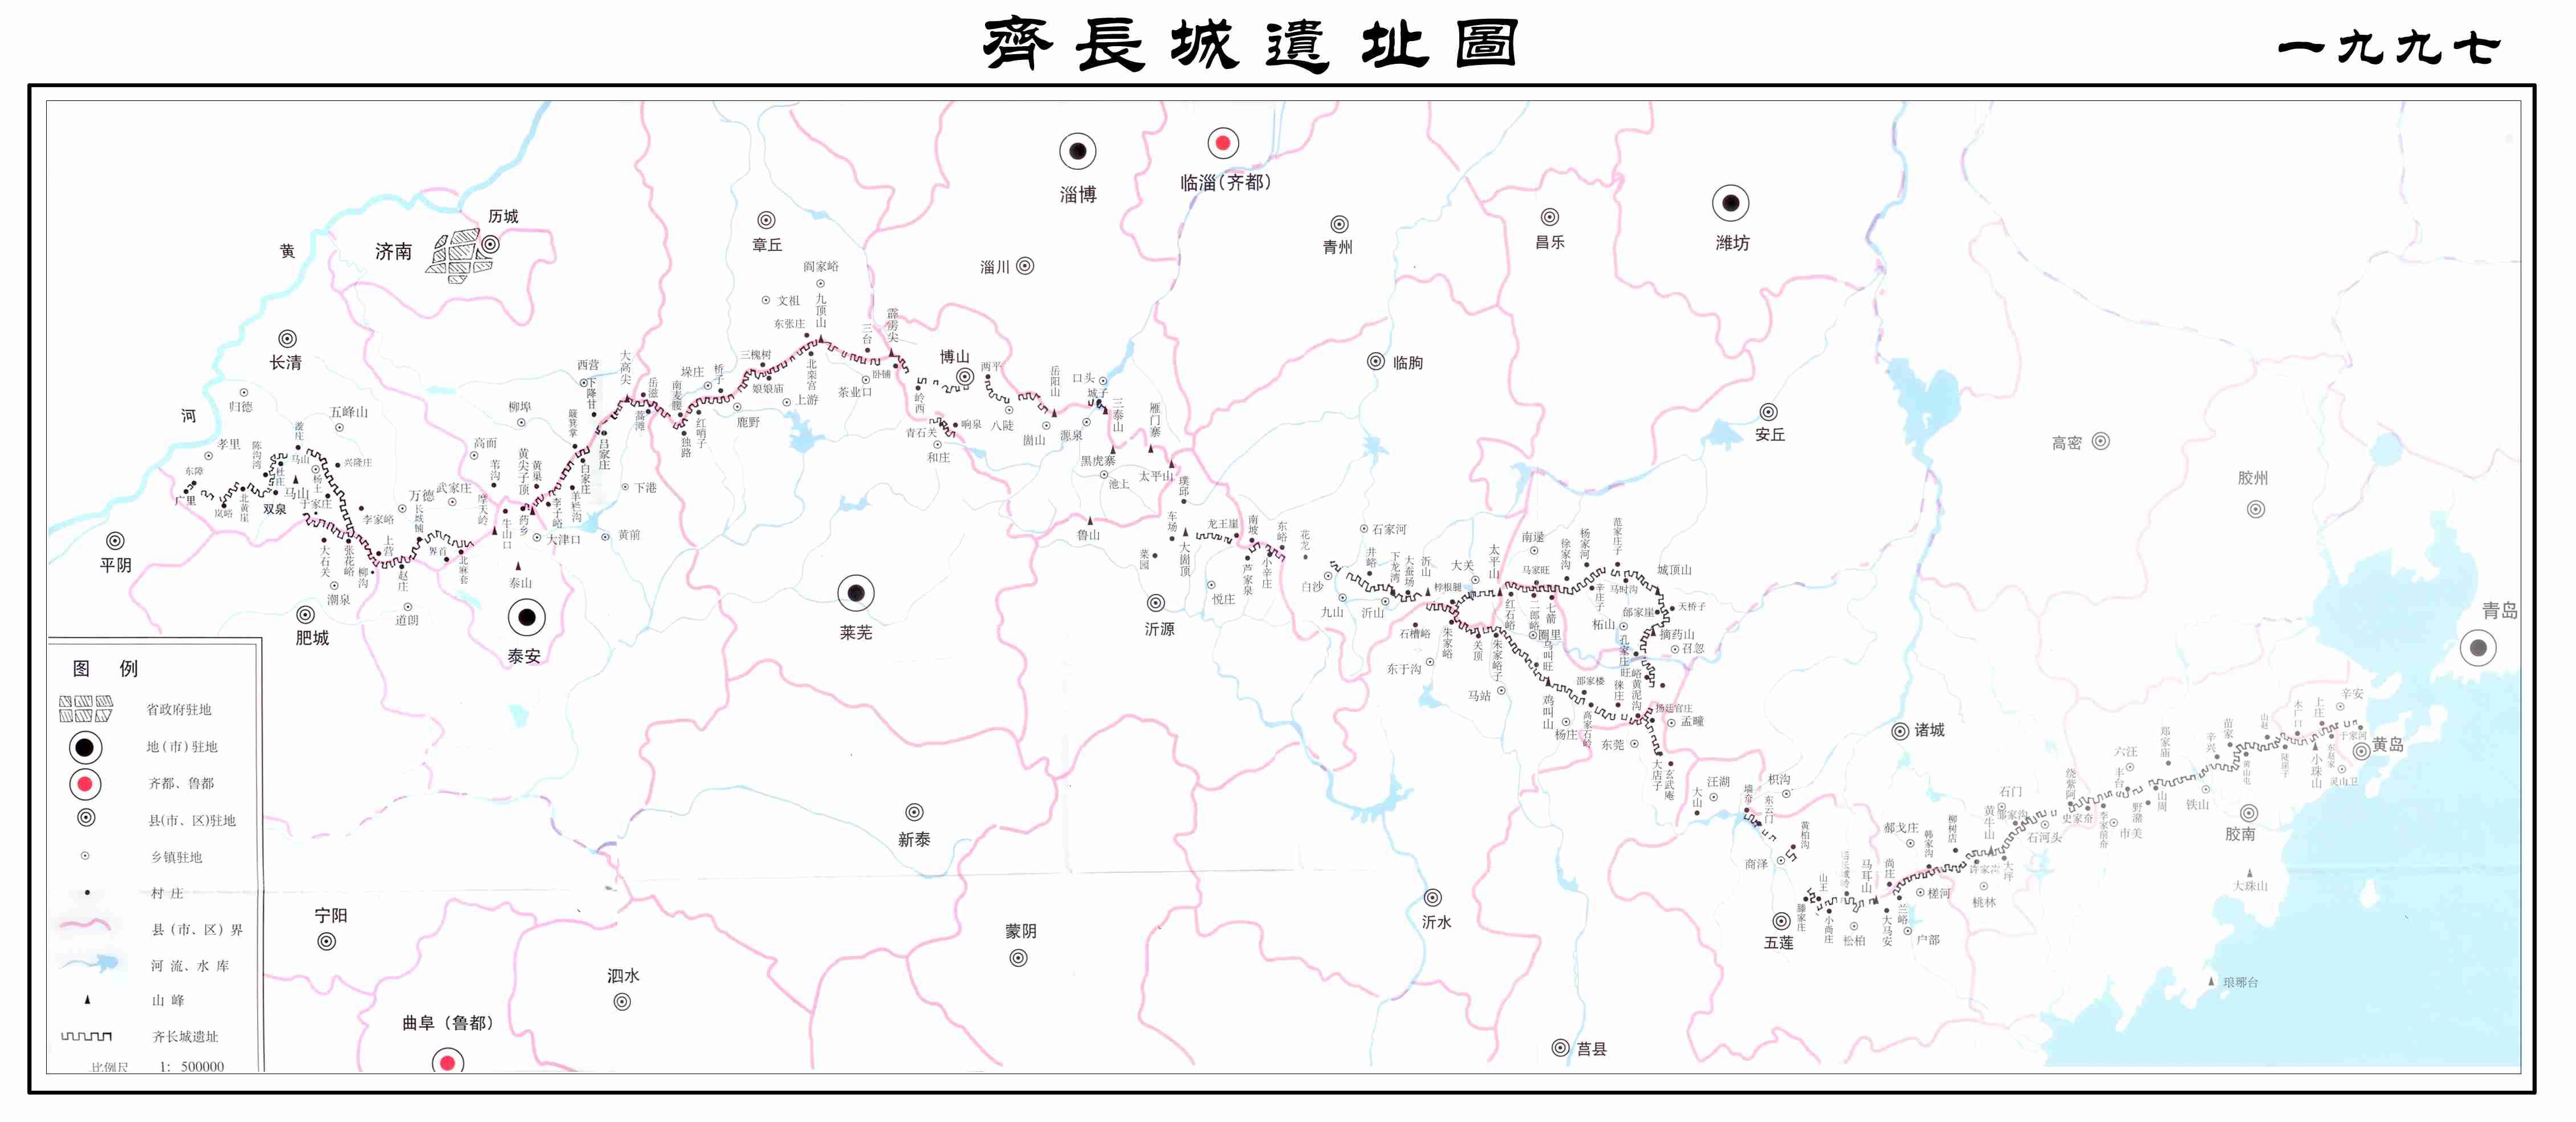 首先看齐长城的地理位置: 大致是西起今济南长清区,东到青岛市黄岛区